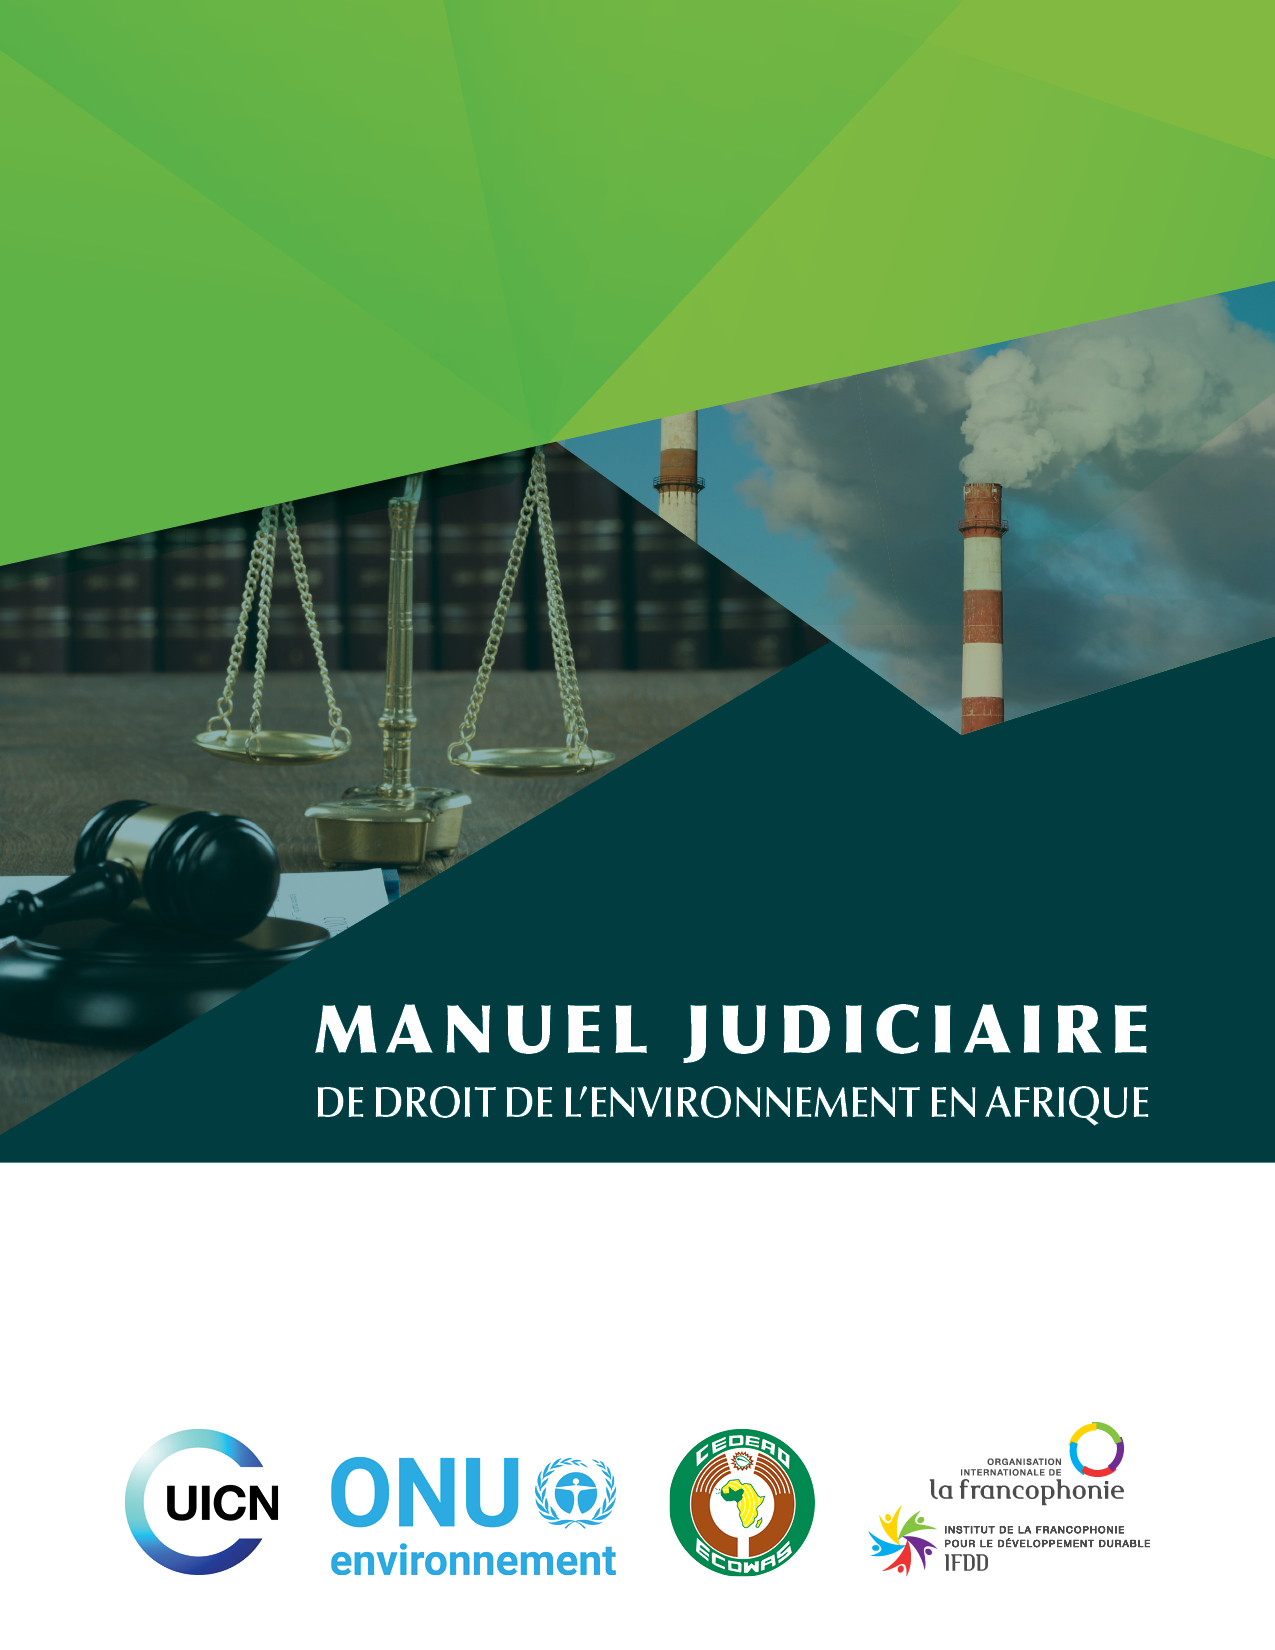 Manuel judiciaire de droit de l’environnement en Afrique Image 1